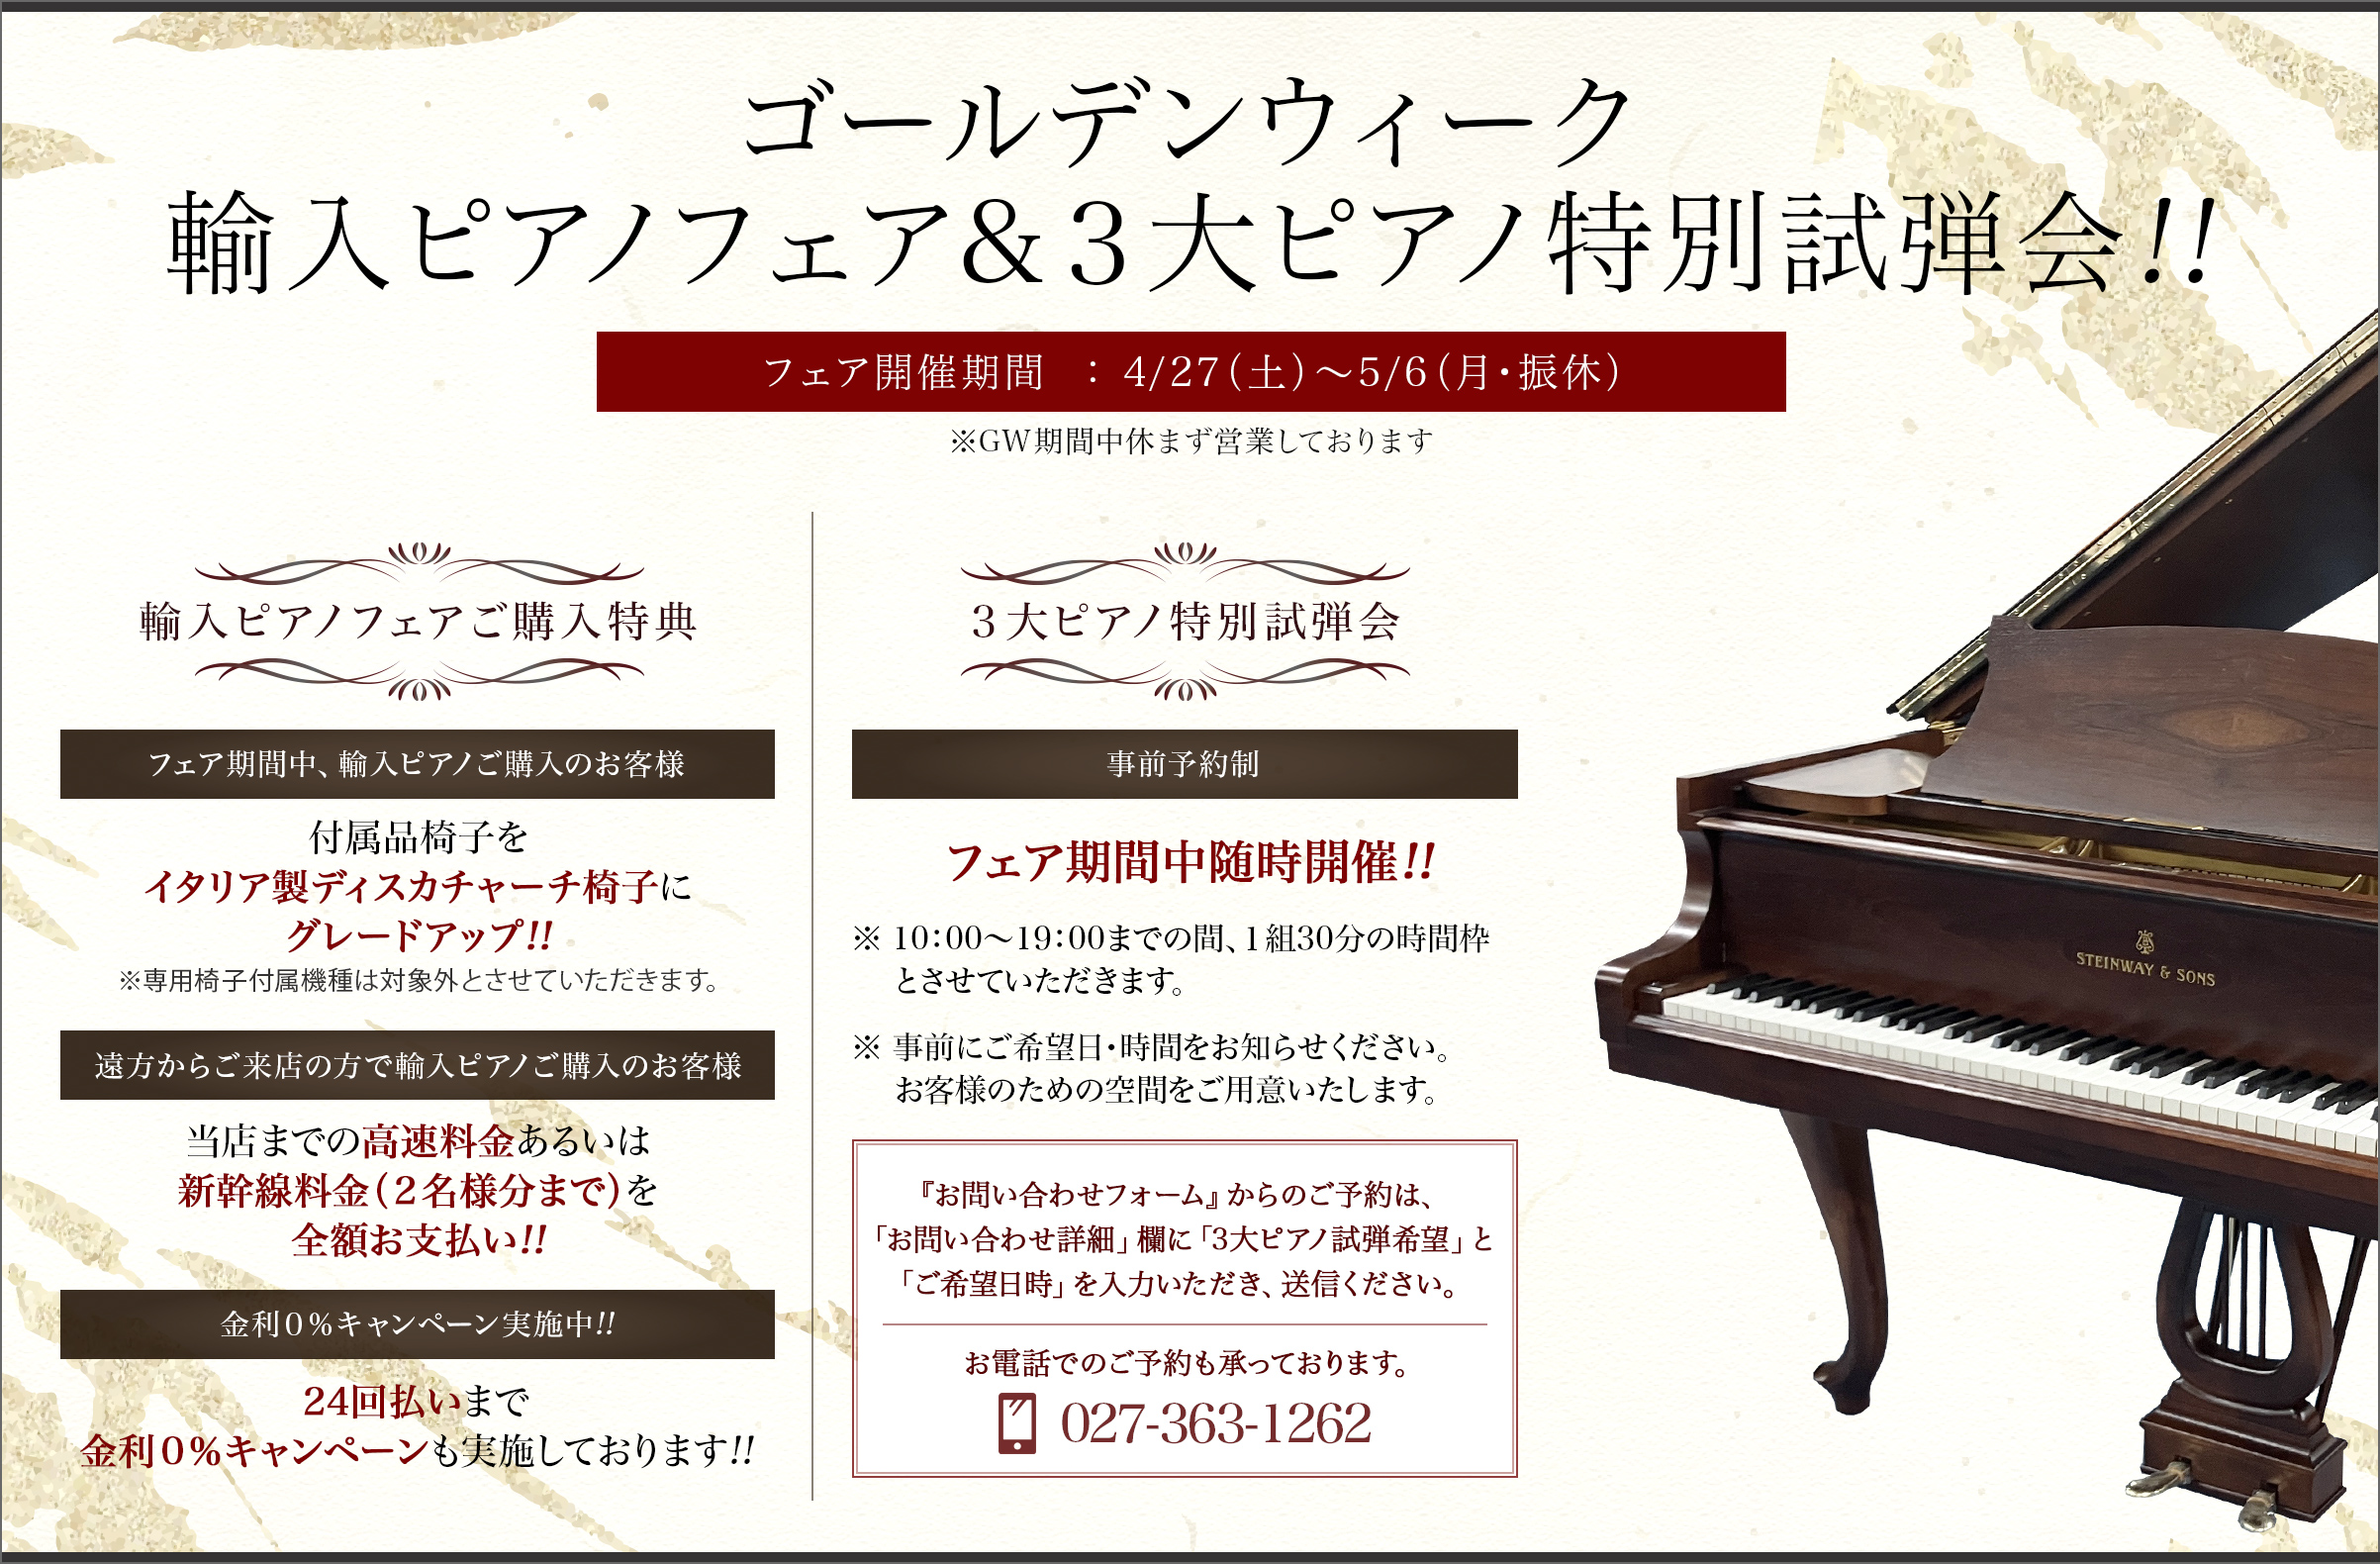 ゴールデンウィーク輸入ピアノフェア&３大ピアノ特別試弾会!! フェア開催期間：4/27（土）～5/6（月・振休）